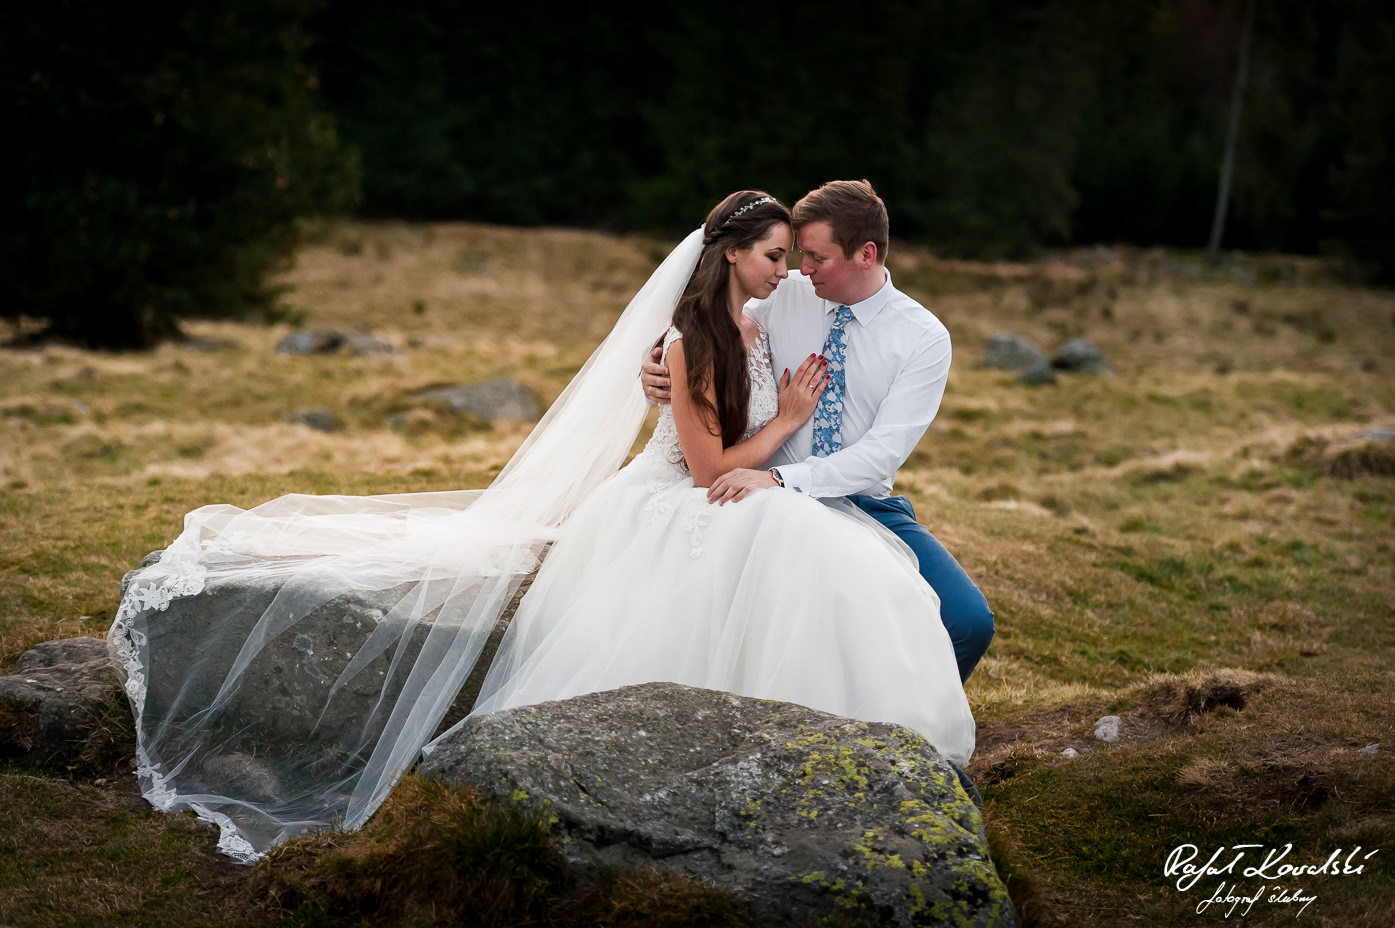 długi rozłożysty welon pięknie komponuje się na fotografii ślubnej z pleneru w górach